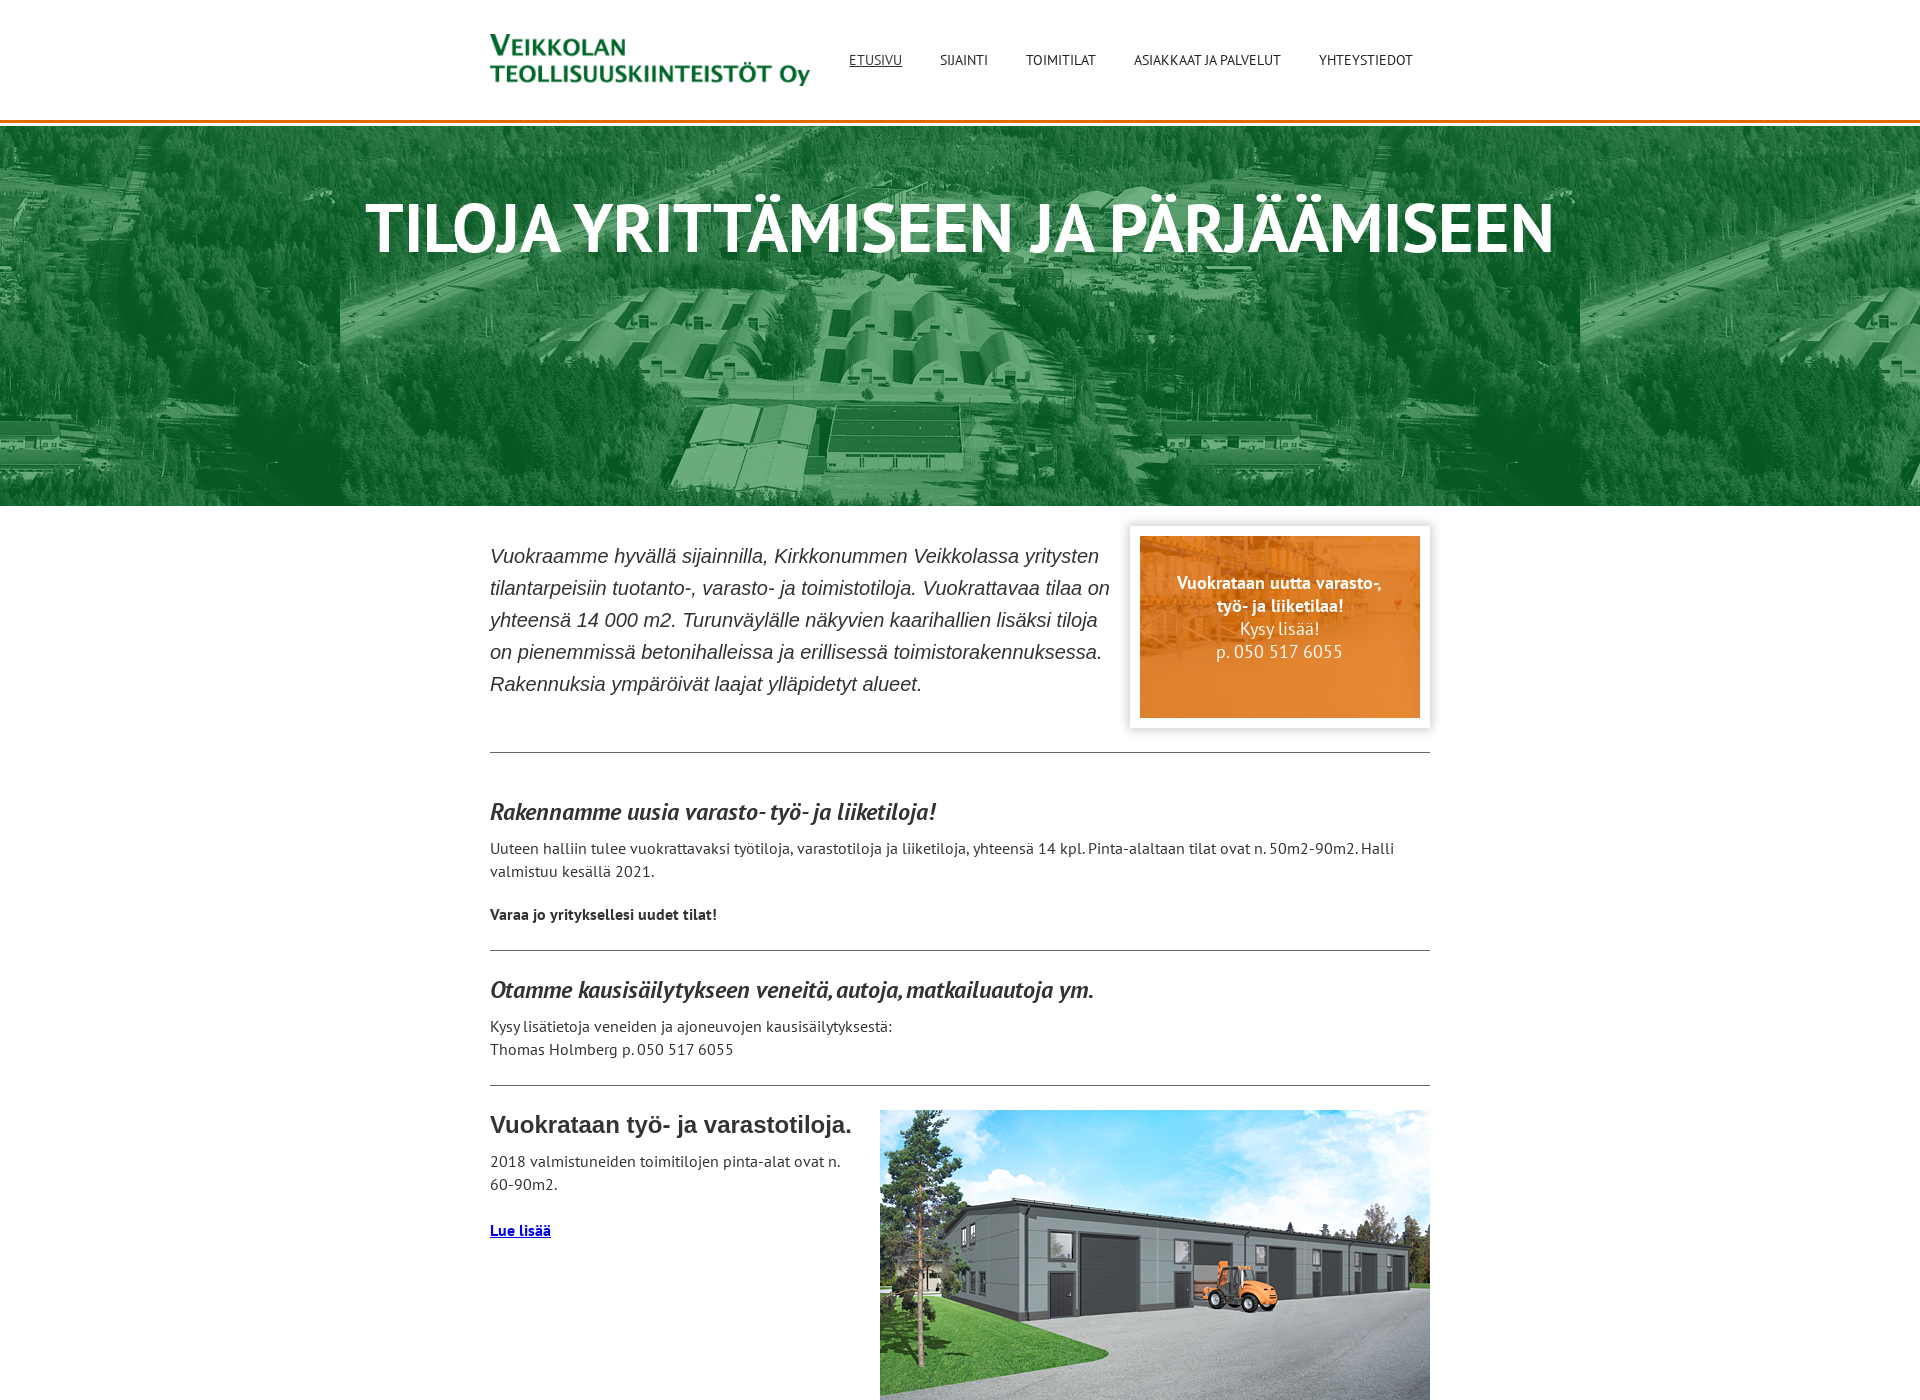 Screenshot for veikkolanteollisuuskiinteisto.fi